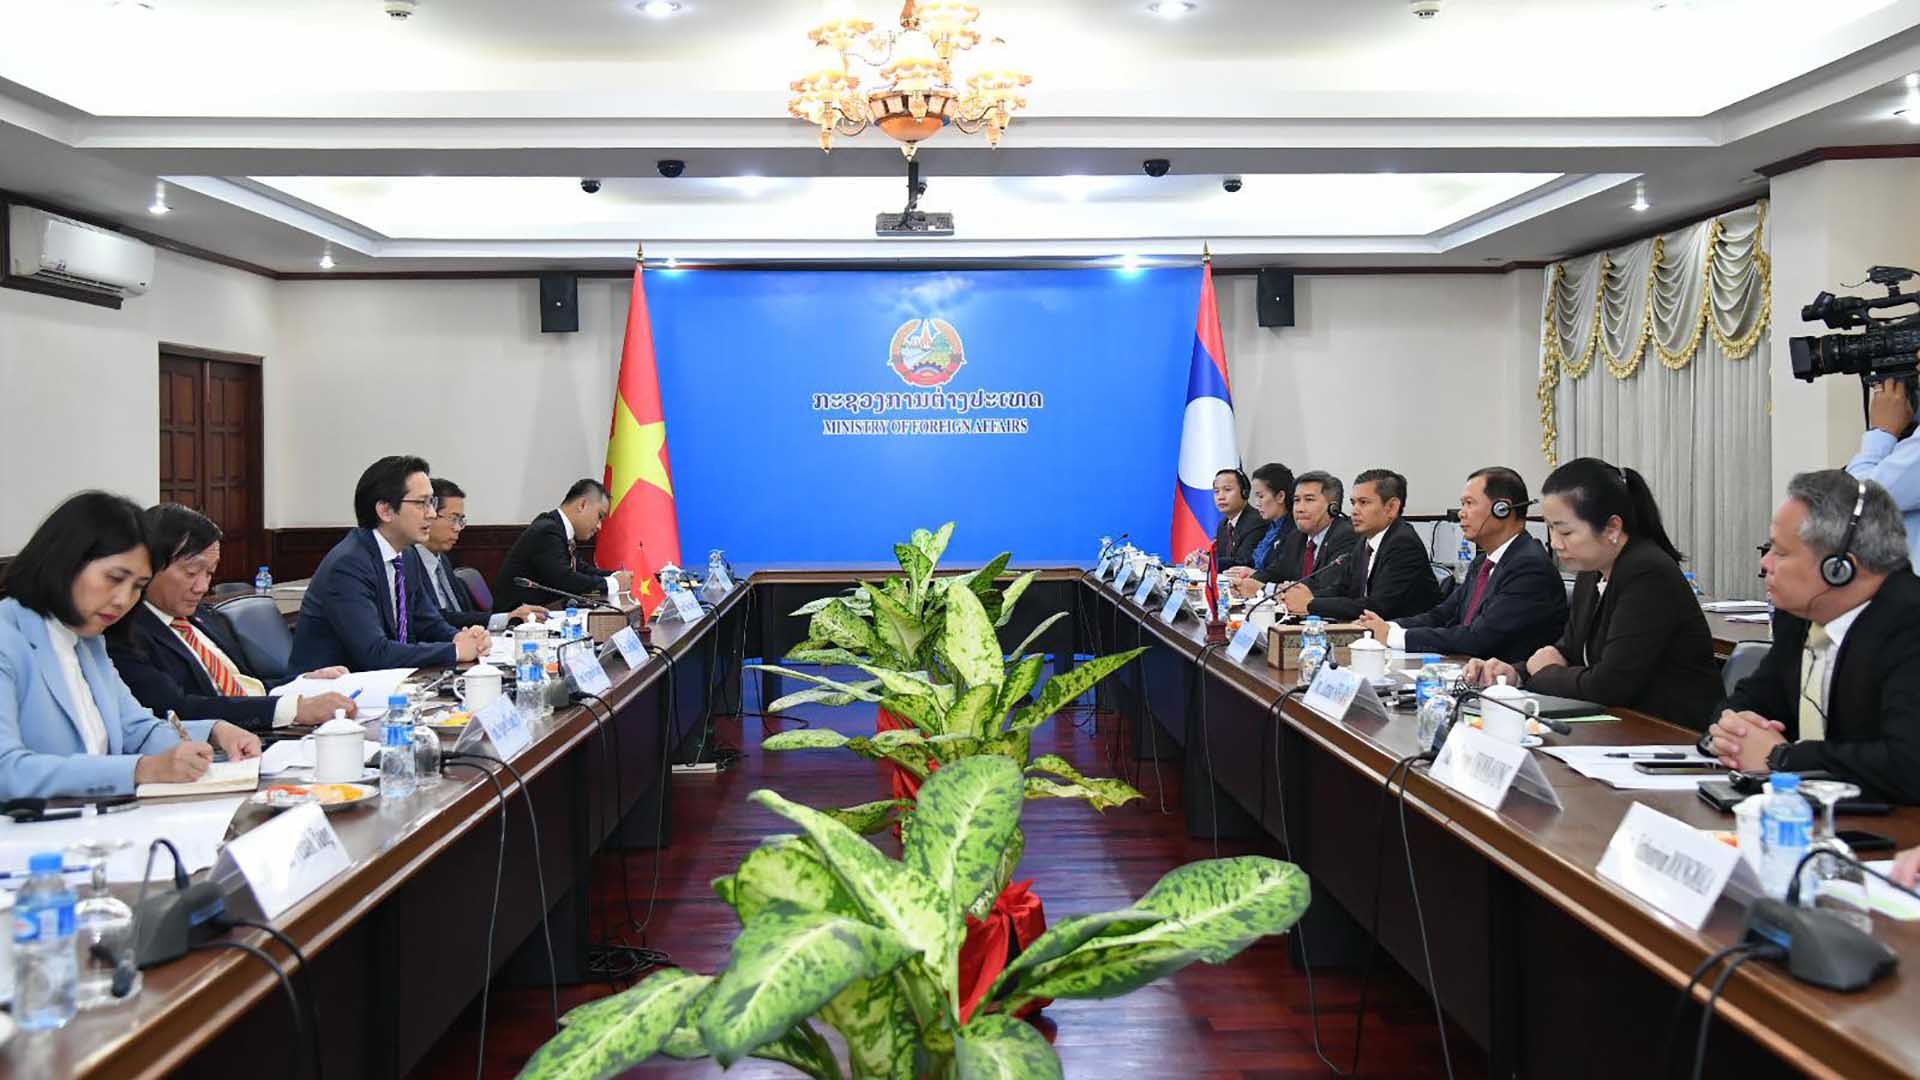 Toàn cảnh Tham khảo chính trị Việt Nam-Lào lần thứ 8